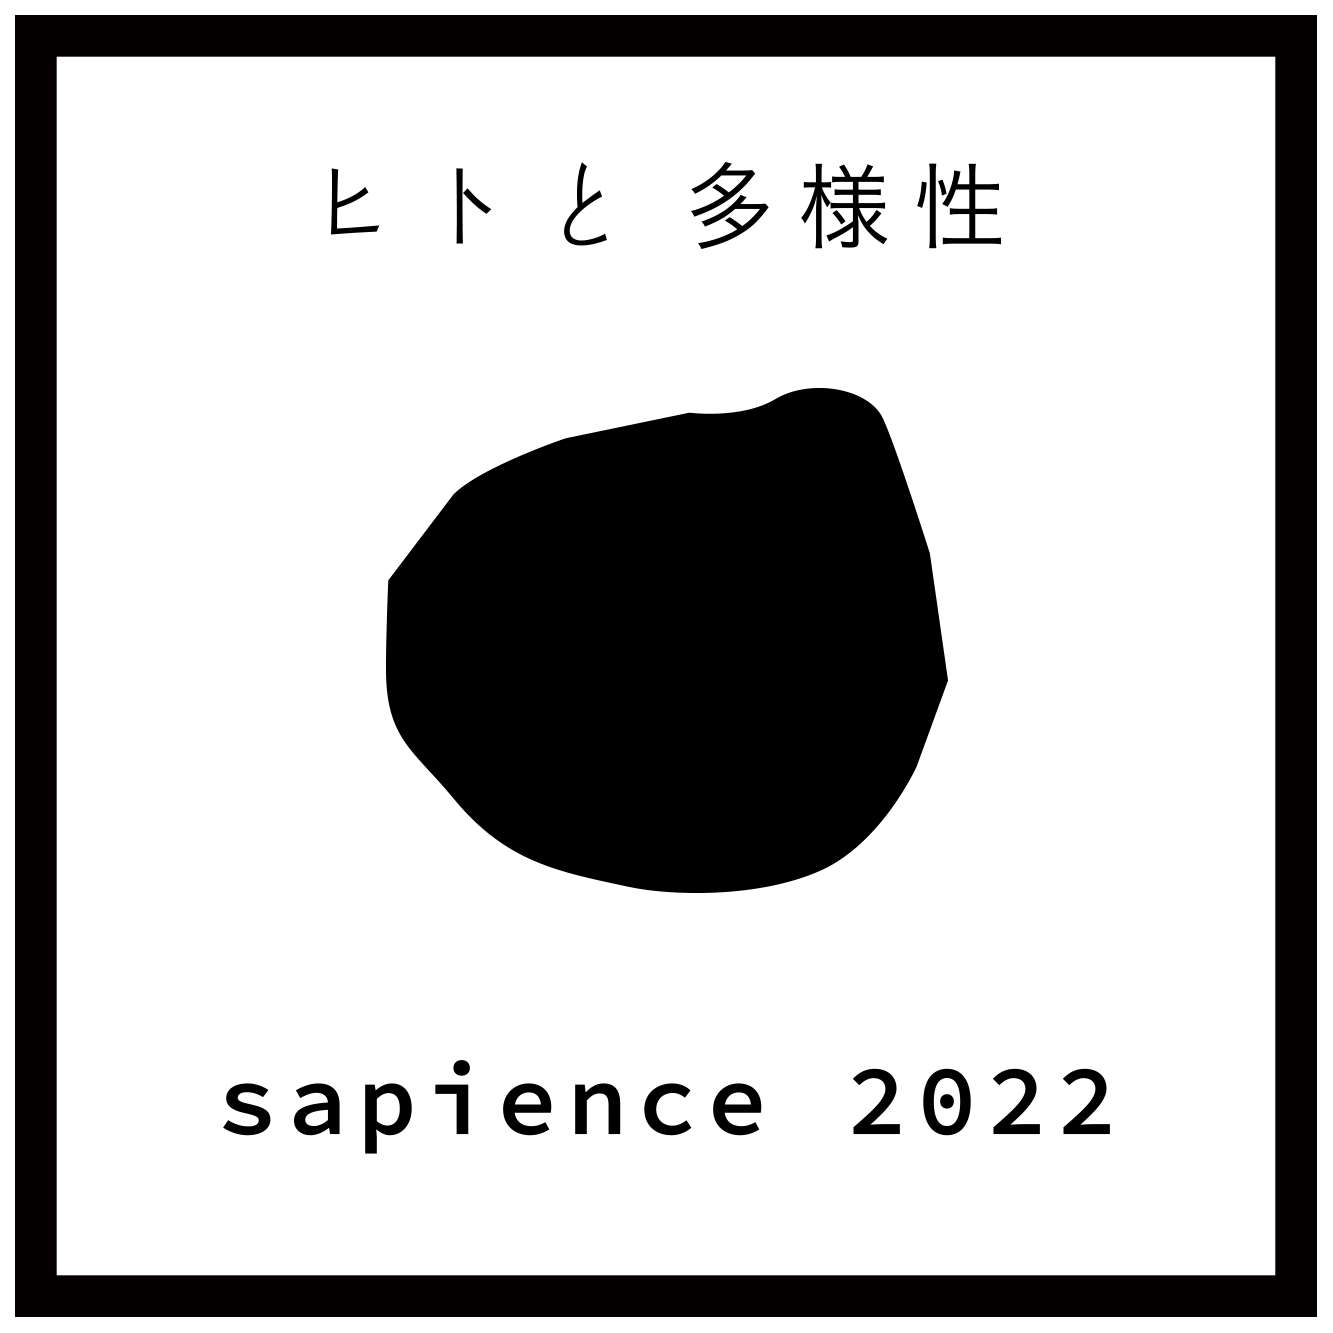 sapience 2022